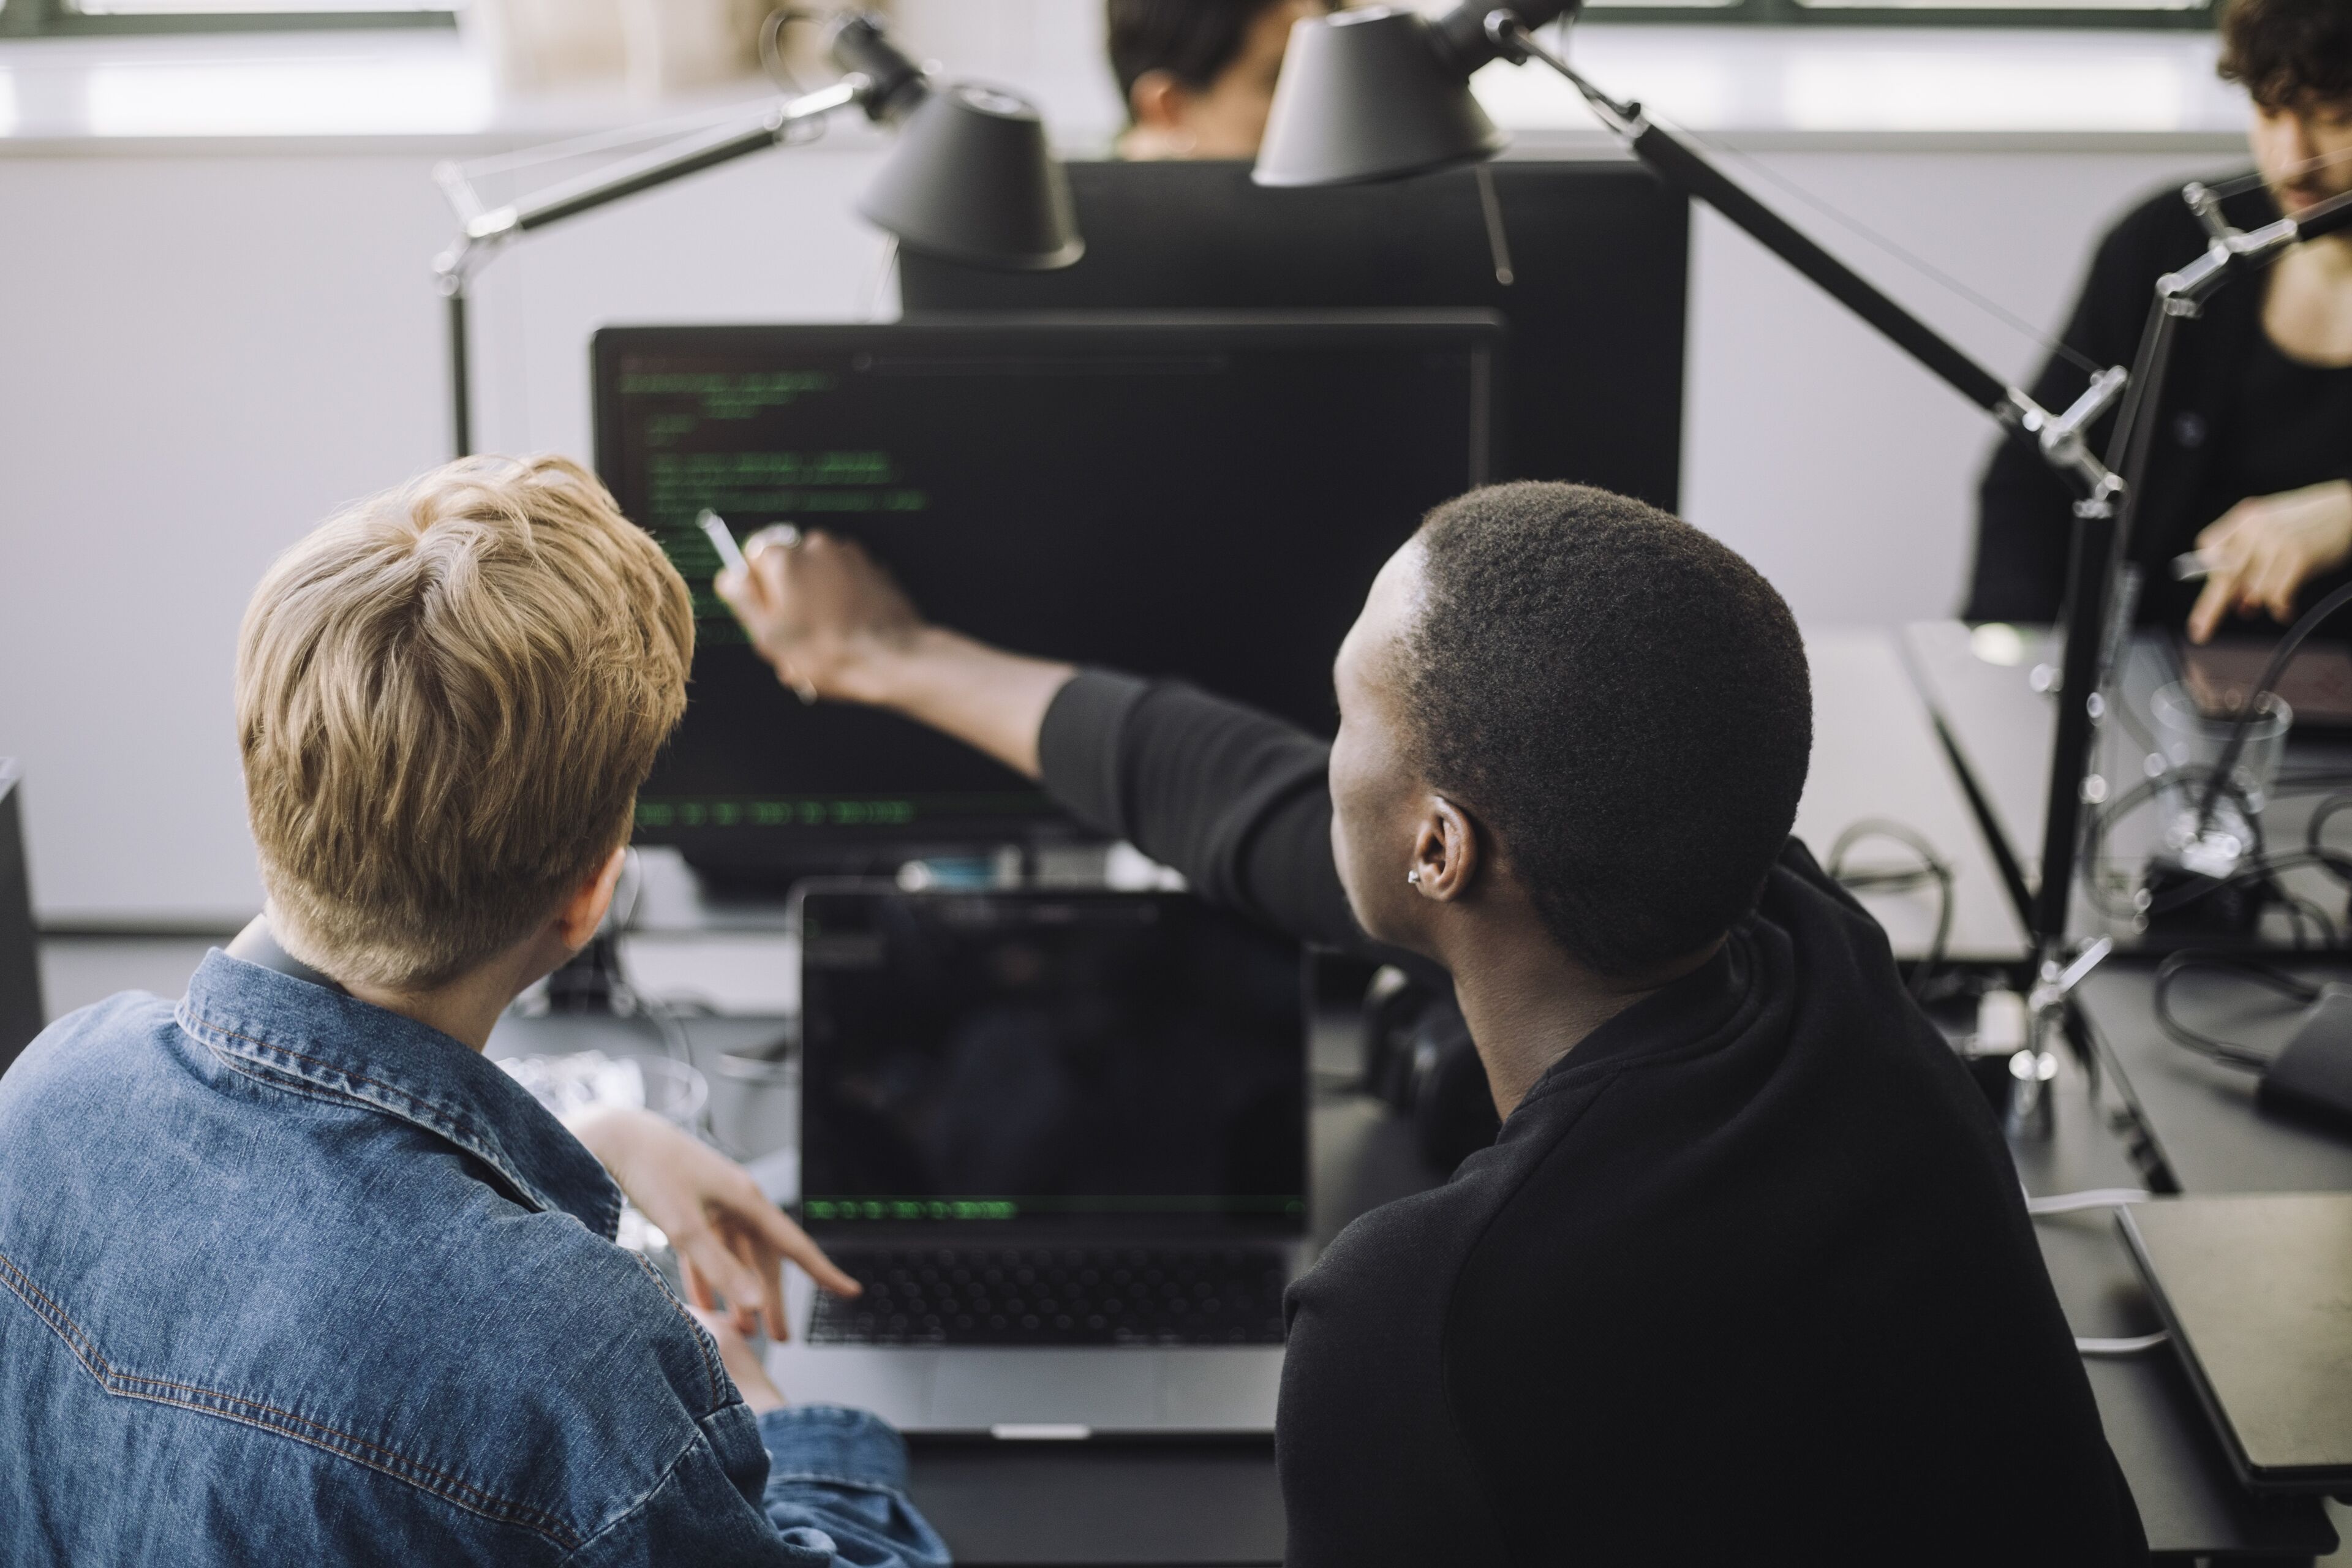 Deux individus participant à une tâche de programmation collaborative, l'un pointant un écran d'ordinateur dans un bureau.